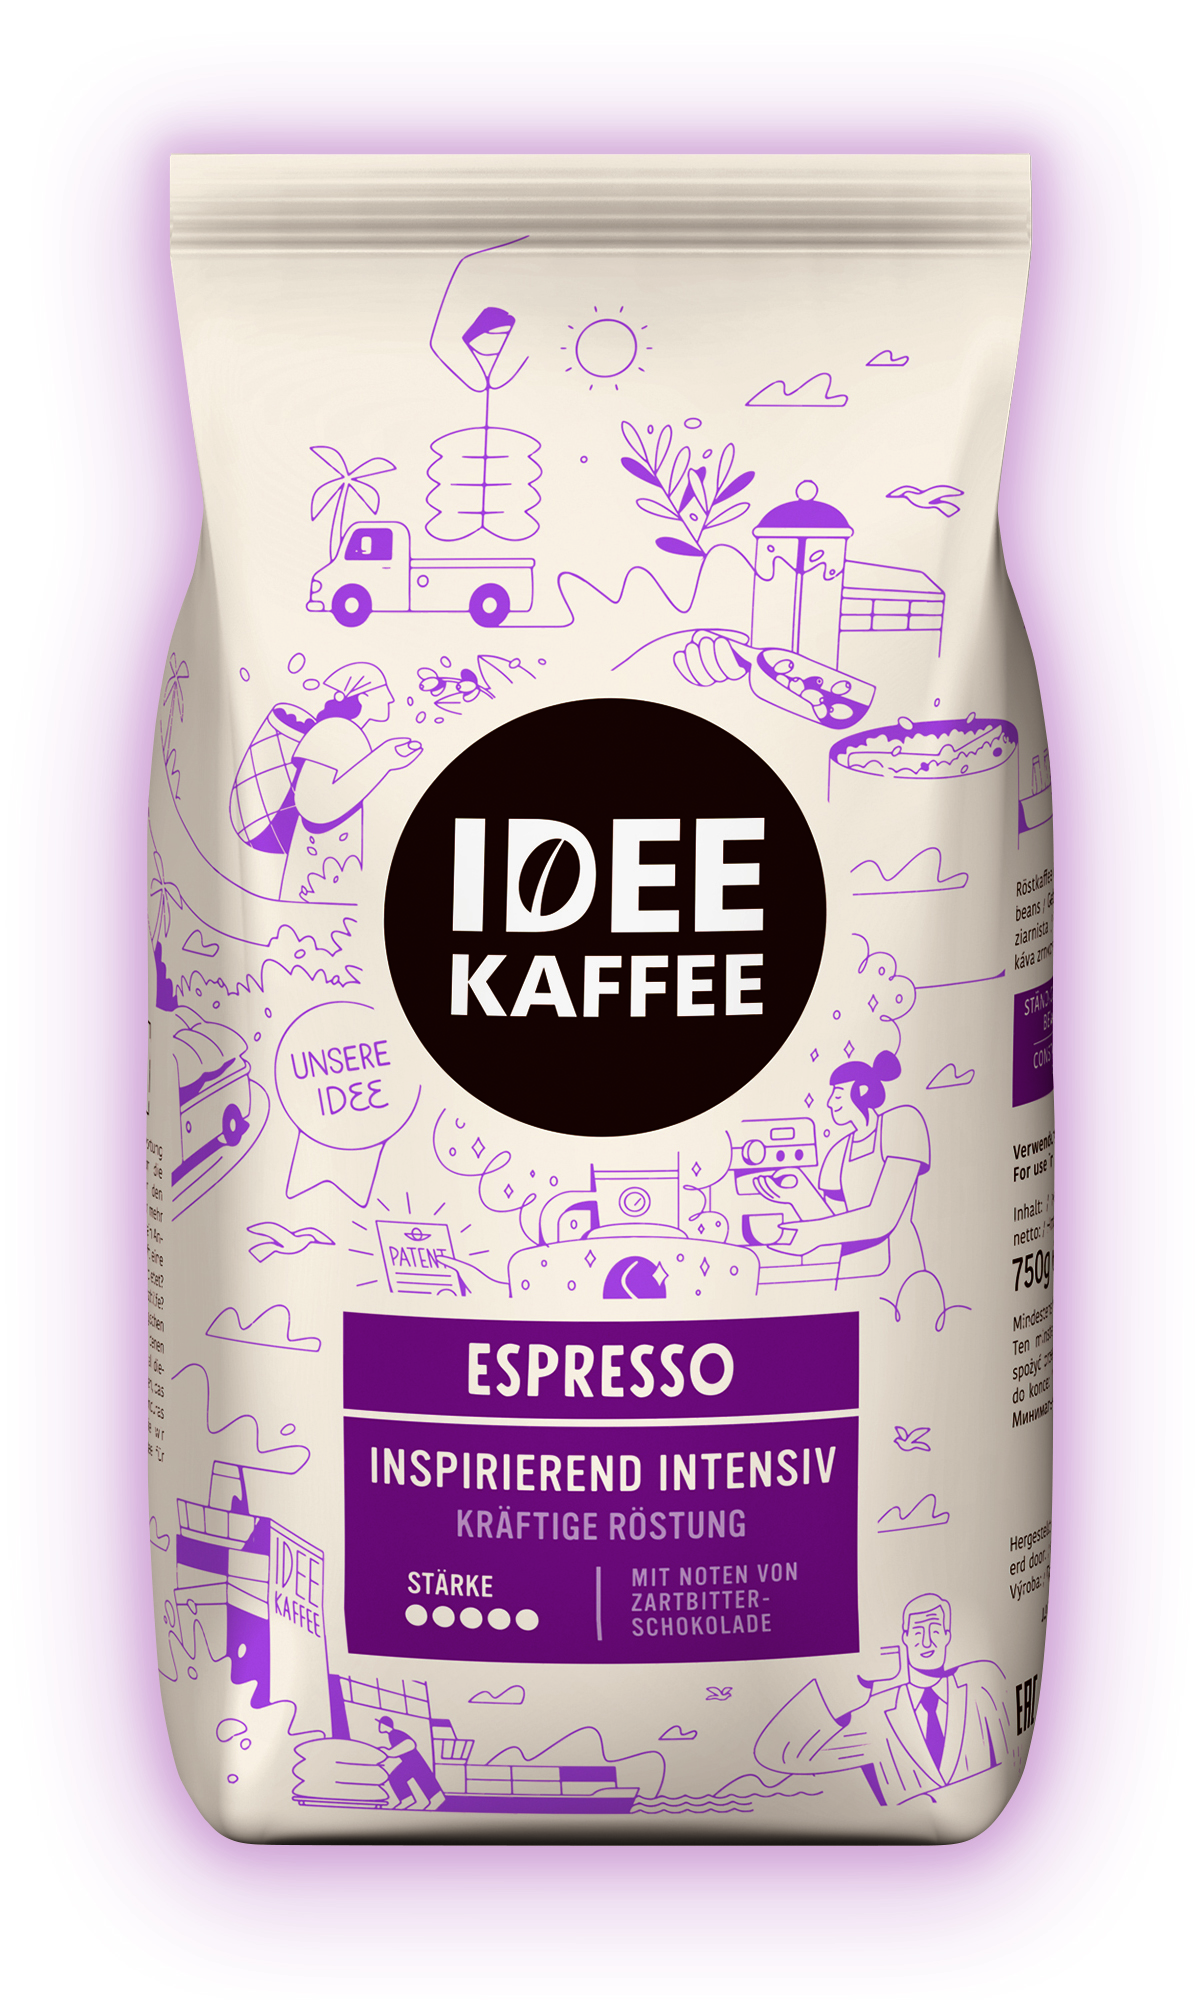 IDEE KAFFEE Espresso Inspirierend Intensiv 750 g ganze Bohne